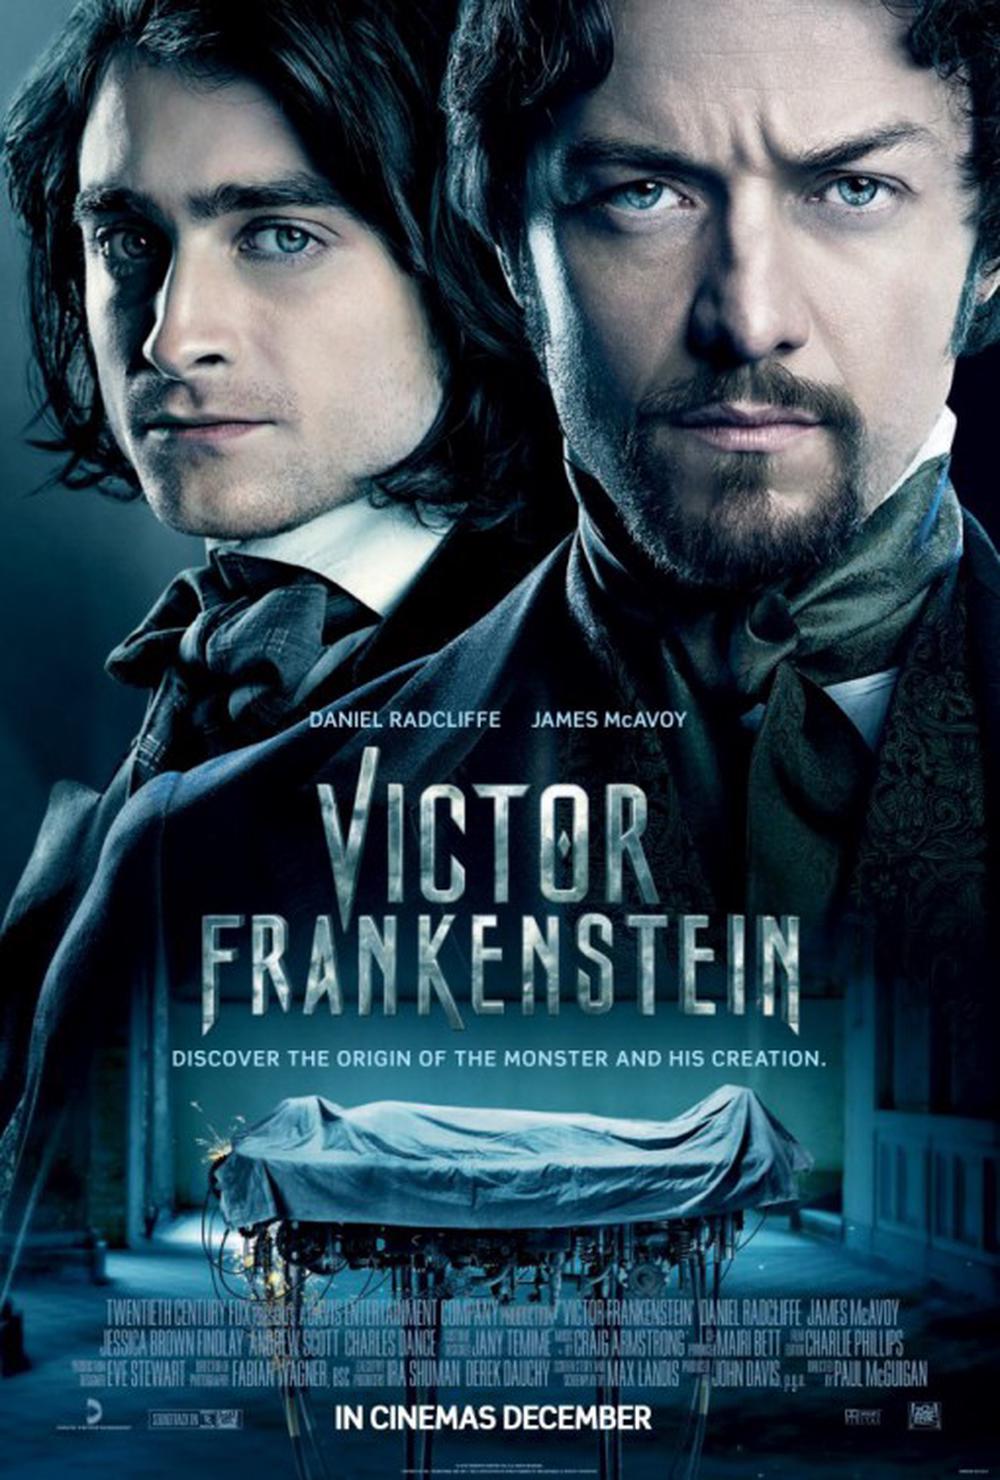 Victor Frankenstein Movie Review